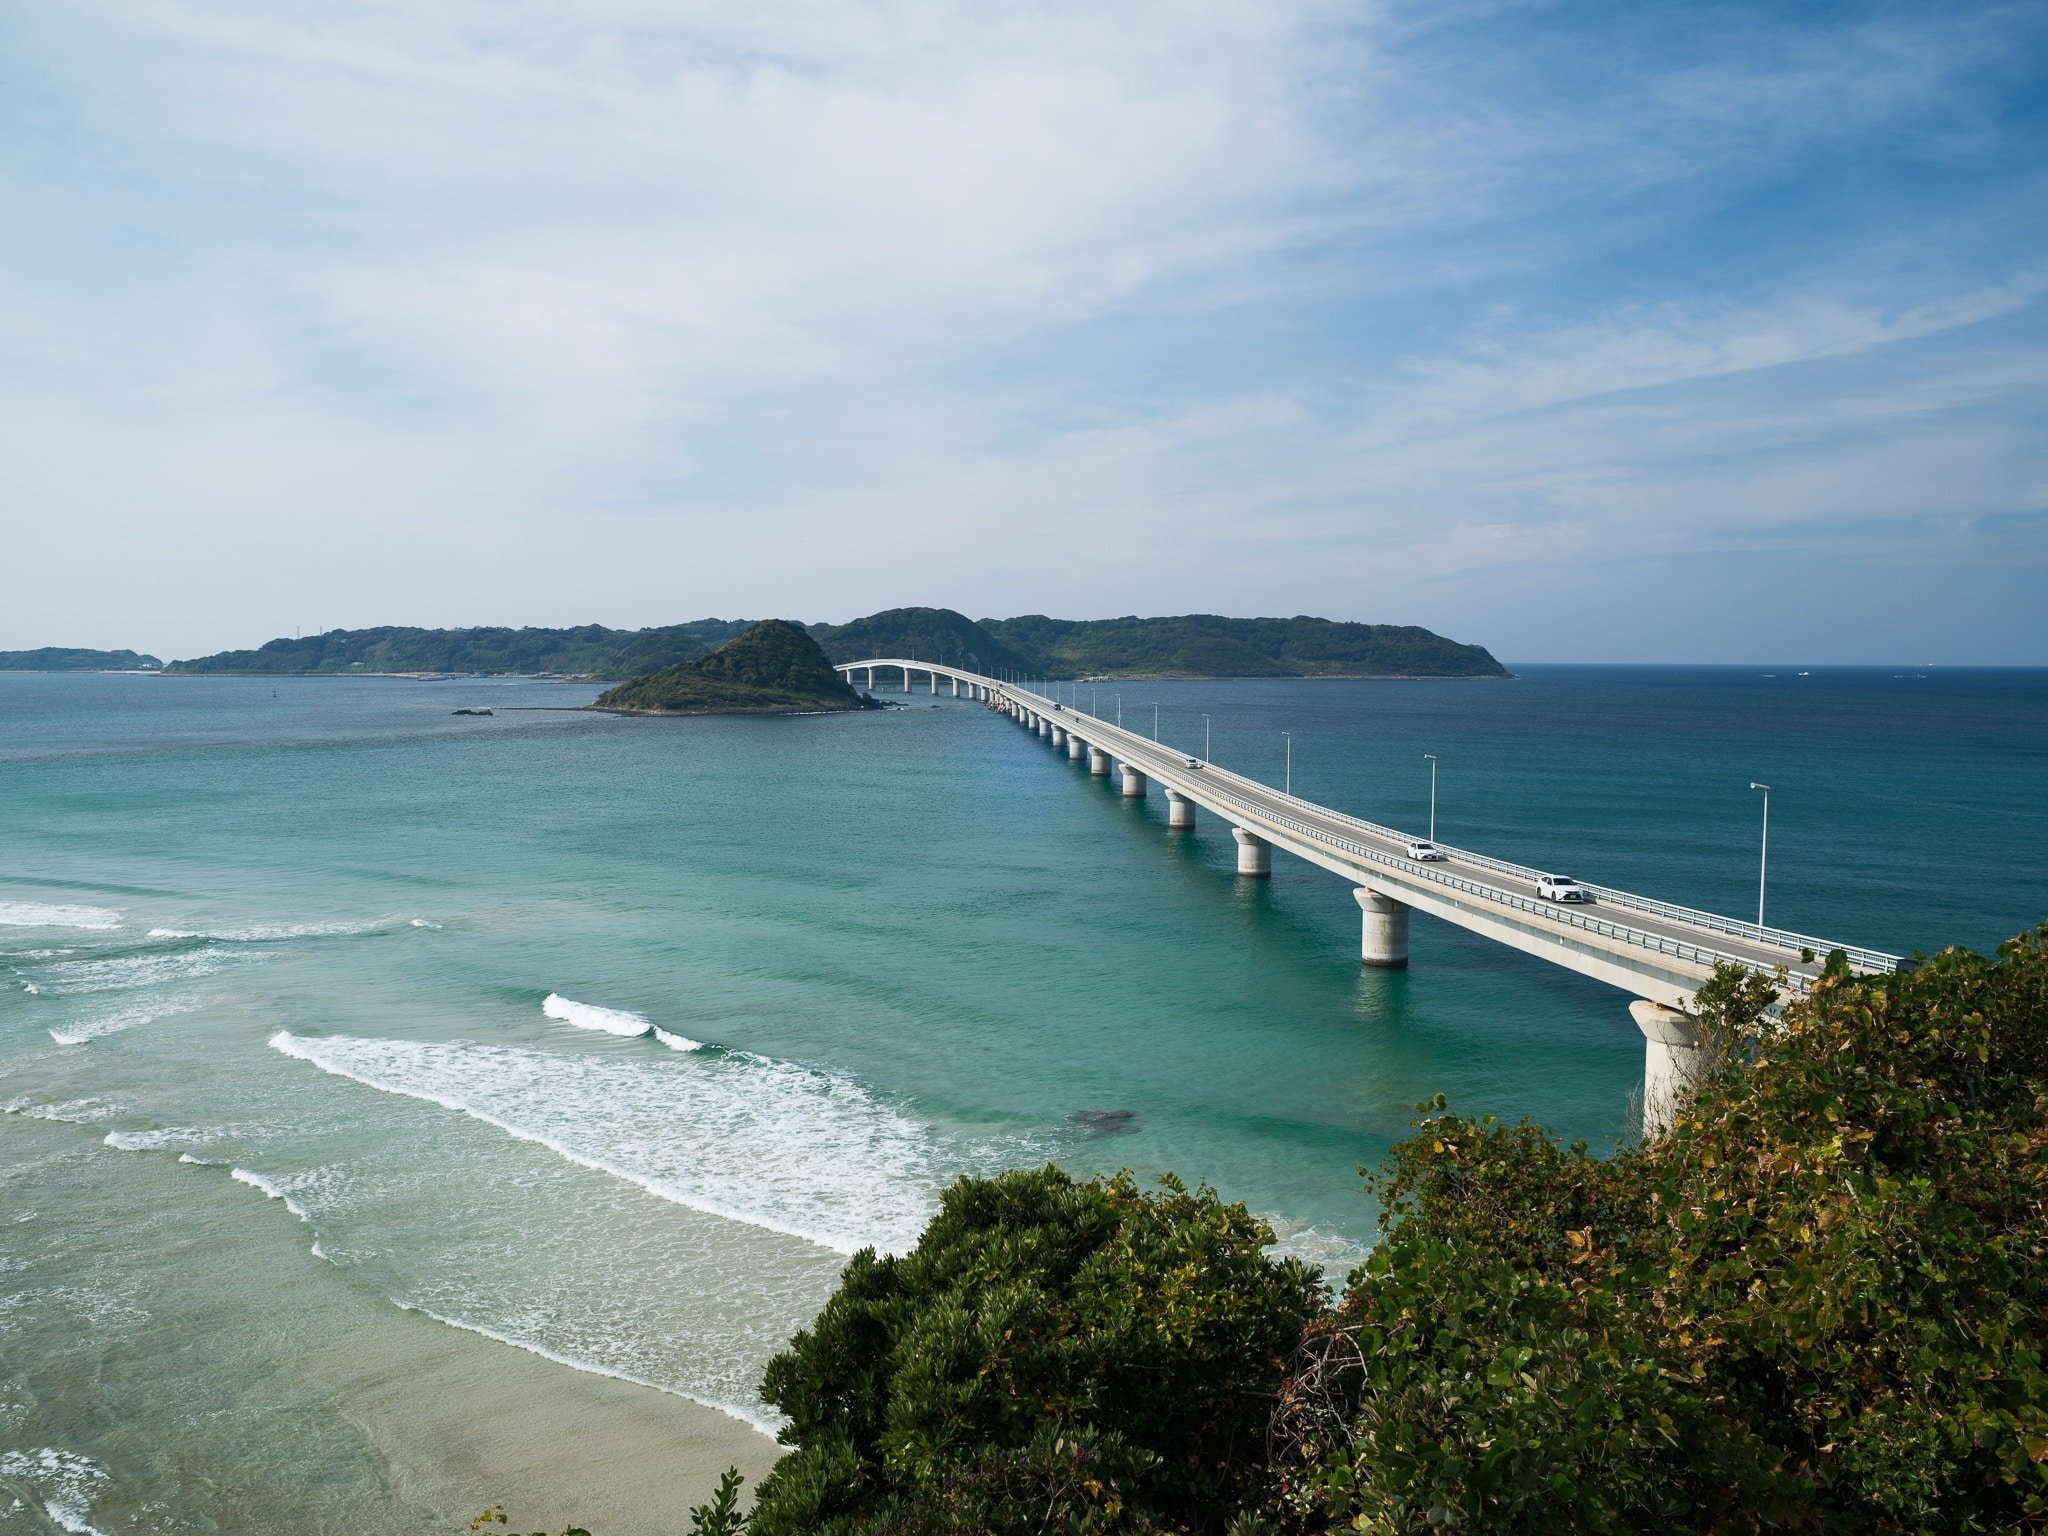 Tsunoshima Bridge with Baveye illustrating the center blue flare